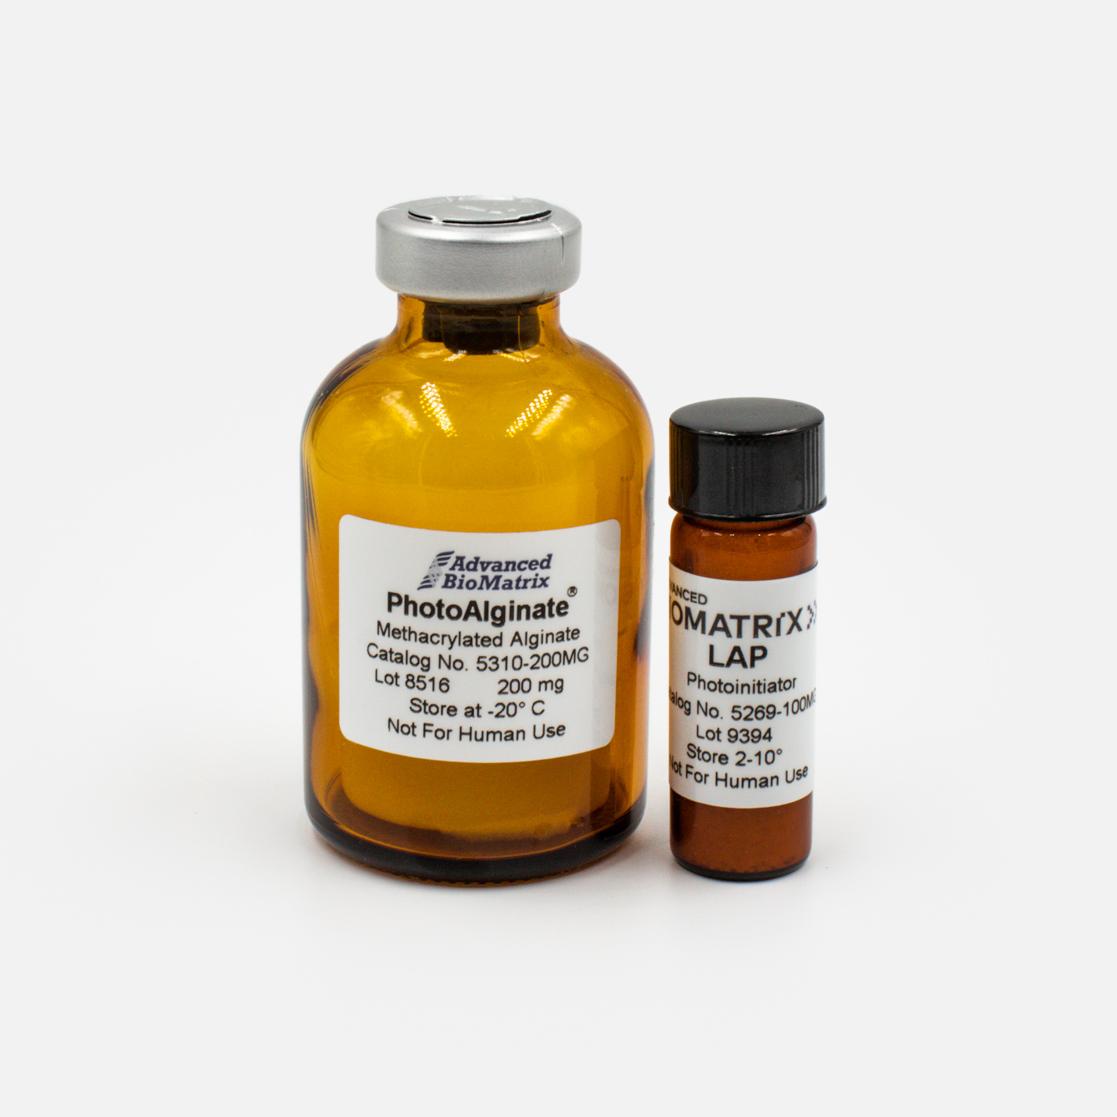 PhotoAlginate methacrylated Alginate with LAP kit